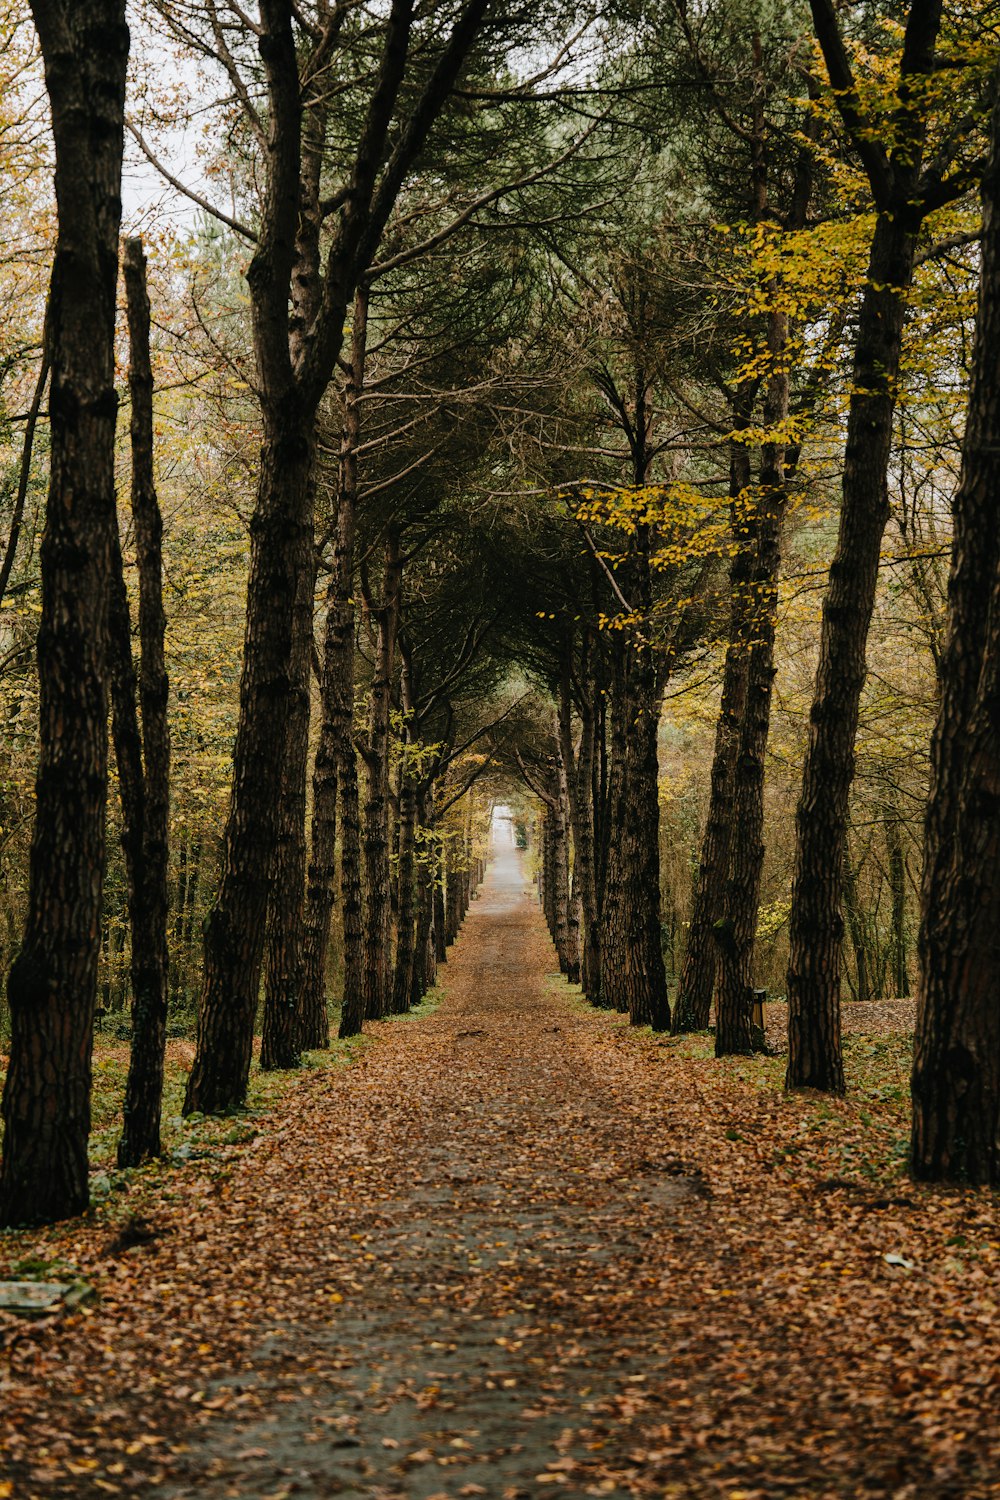 un chemin de terre entouré d’arbres avec des feuilles au sol